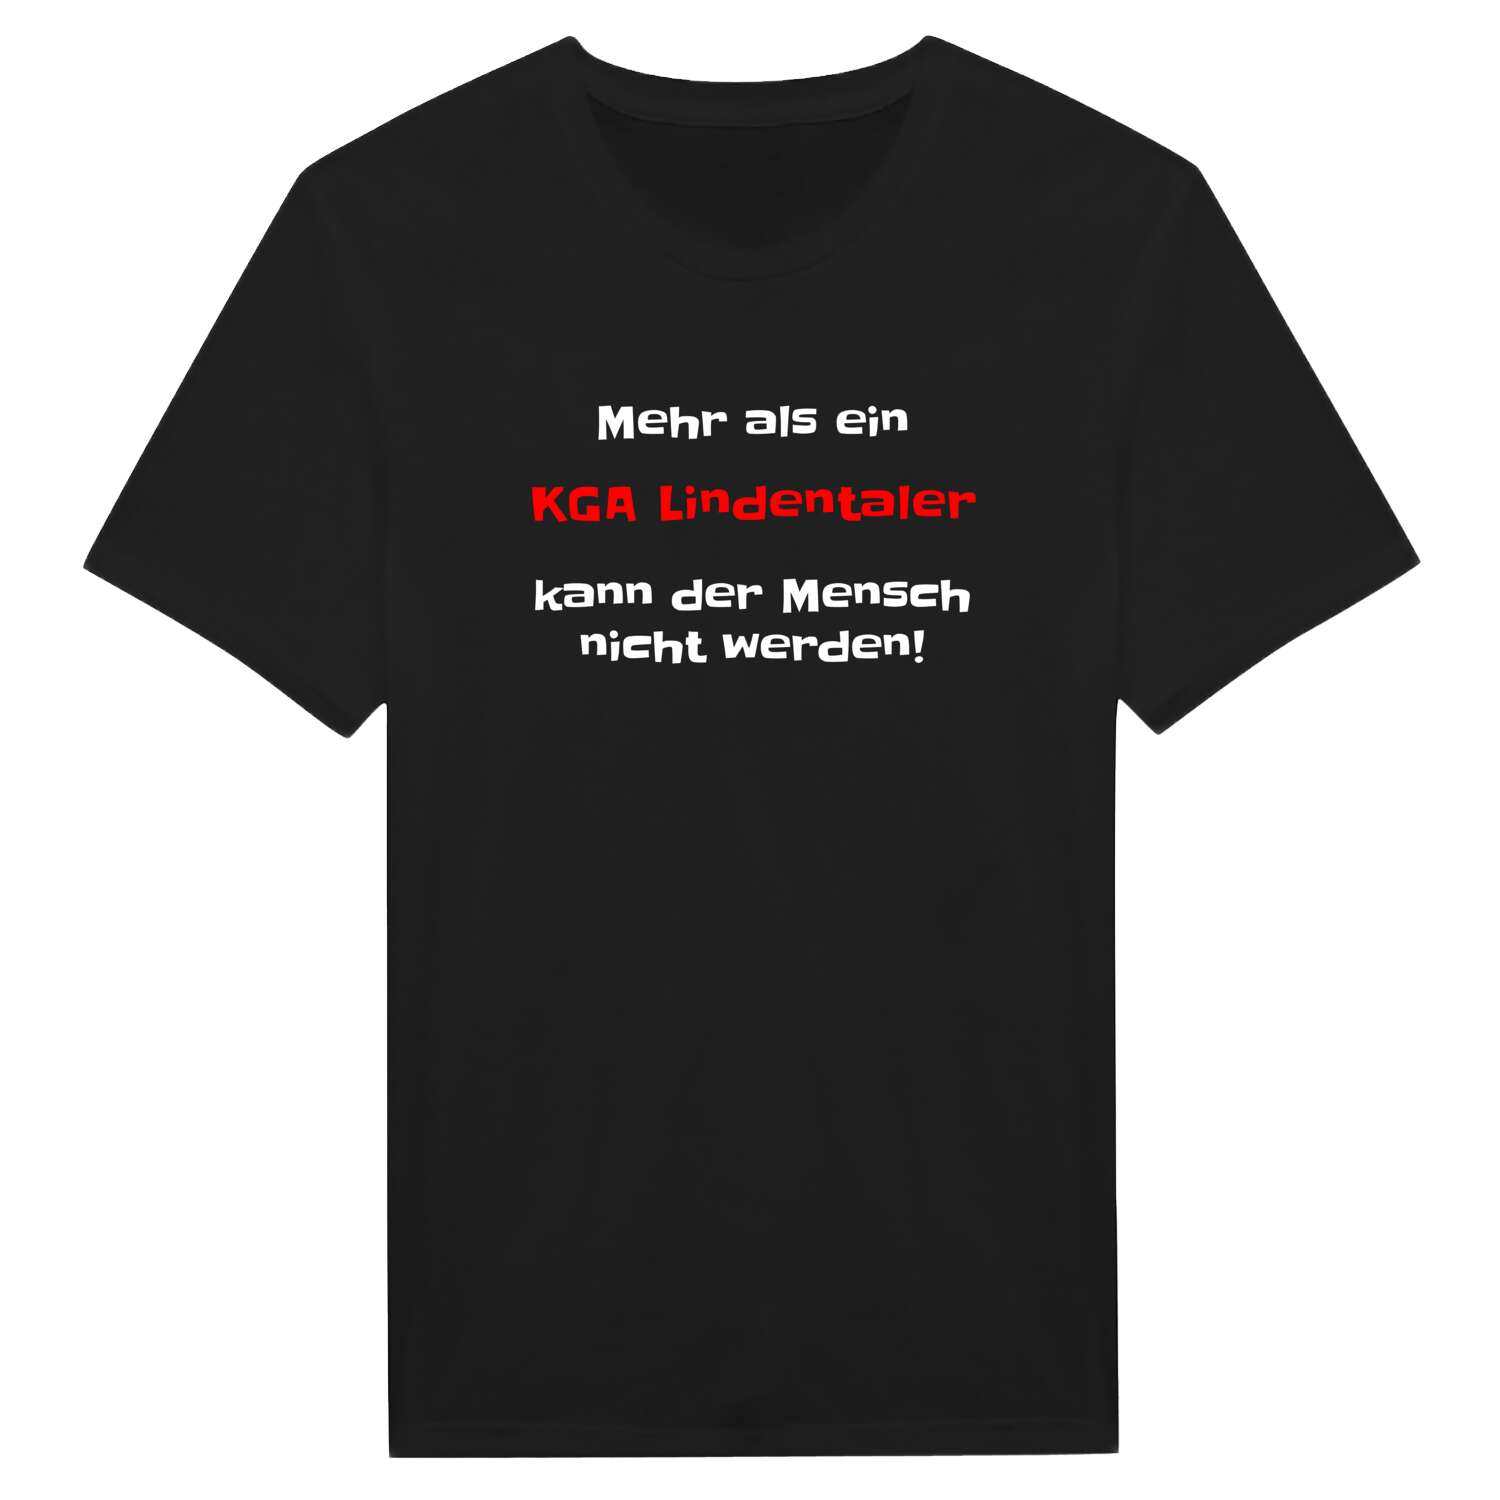 KGA Lindental T-Shirt »Mehr als ein«